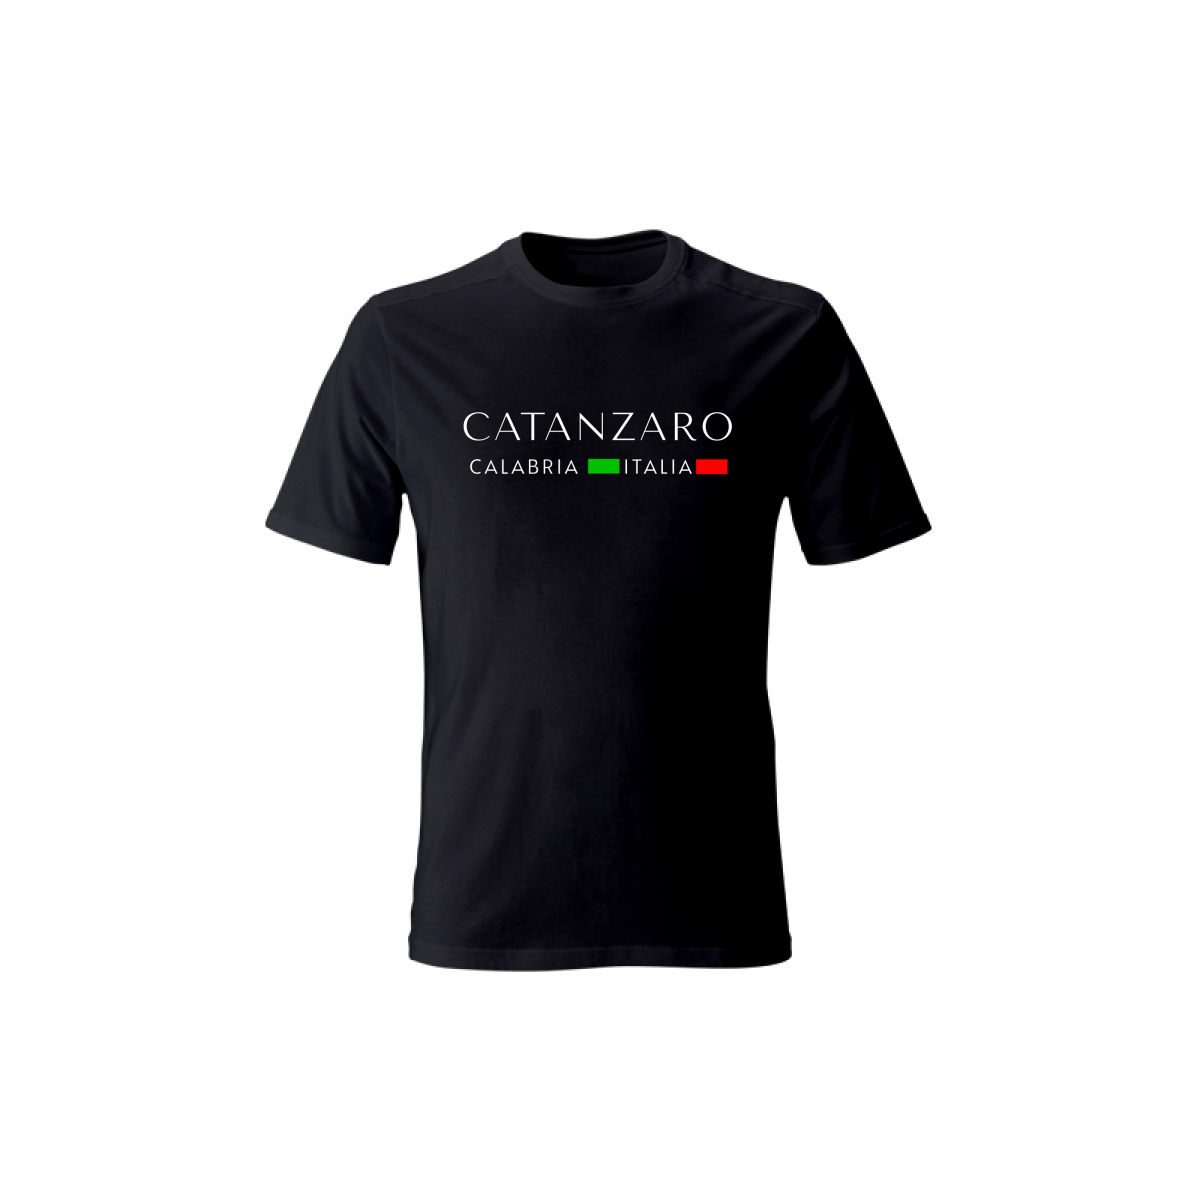 Catanzaro Calabria Italia - T-shirt e felpa